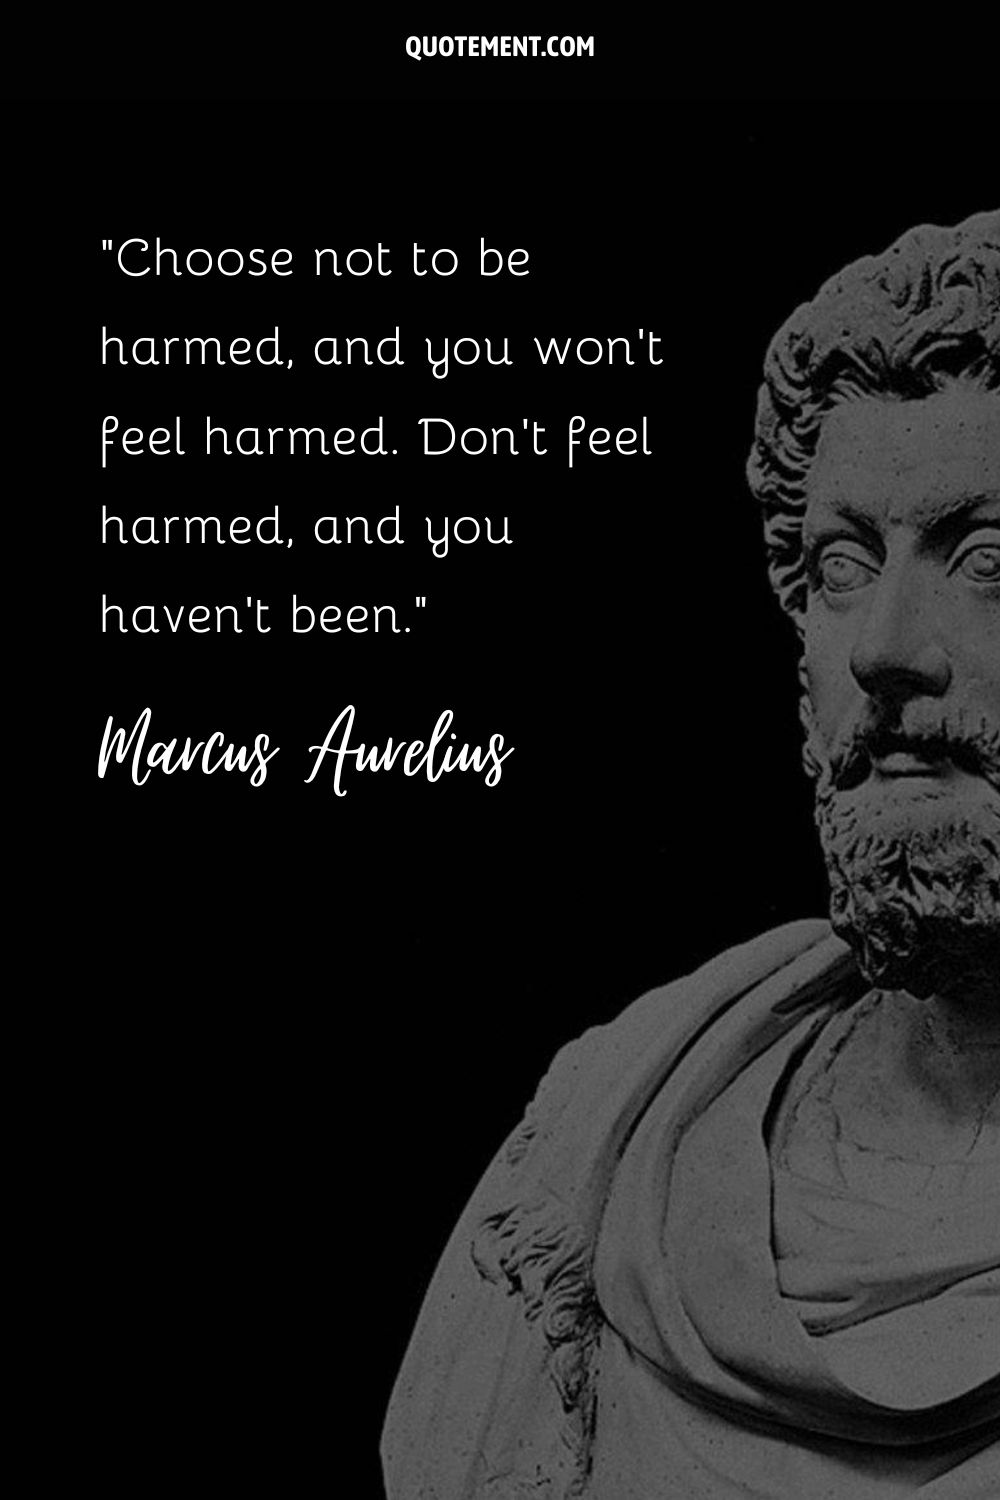 Marble tribute to Marcus Aurelius.
